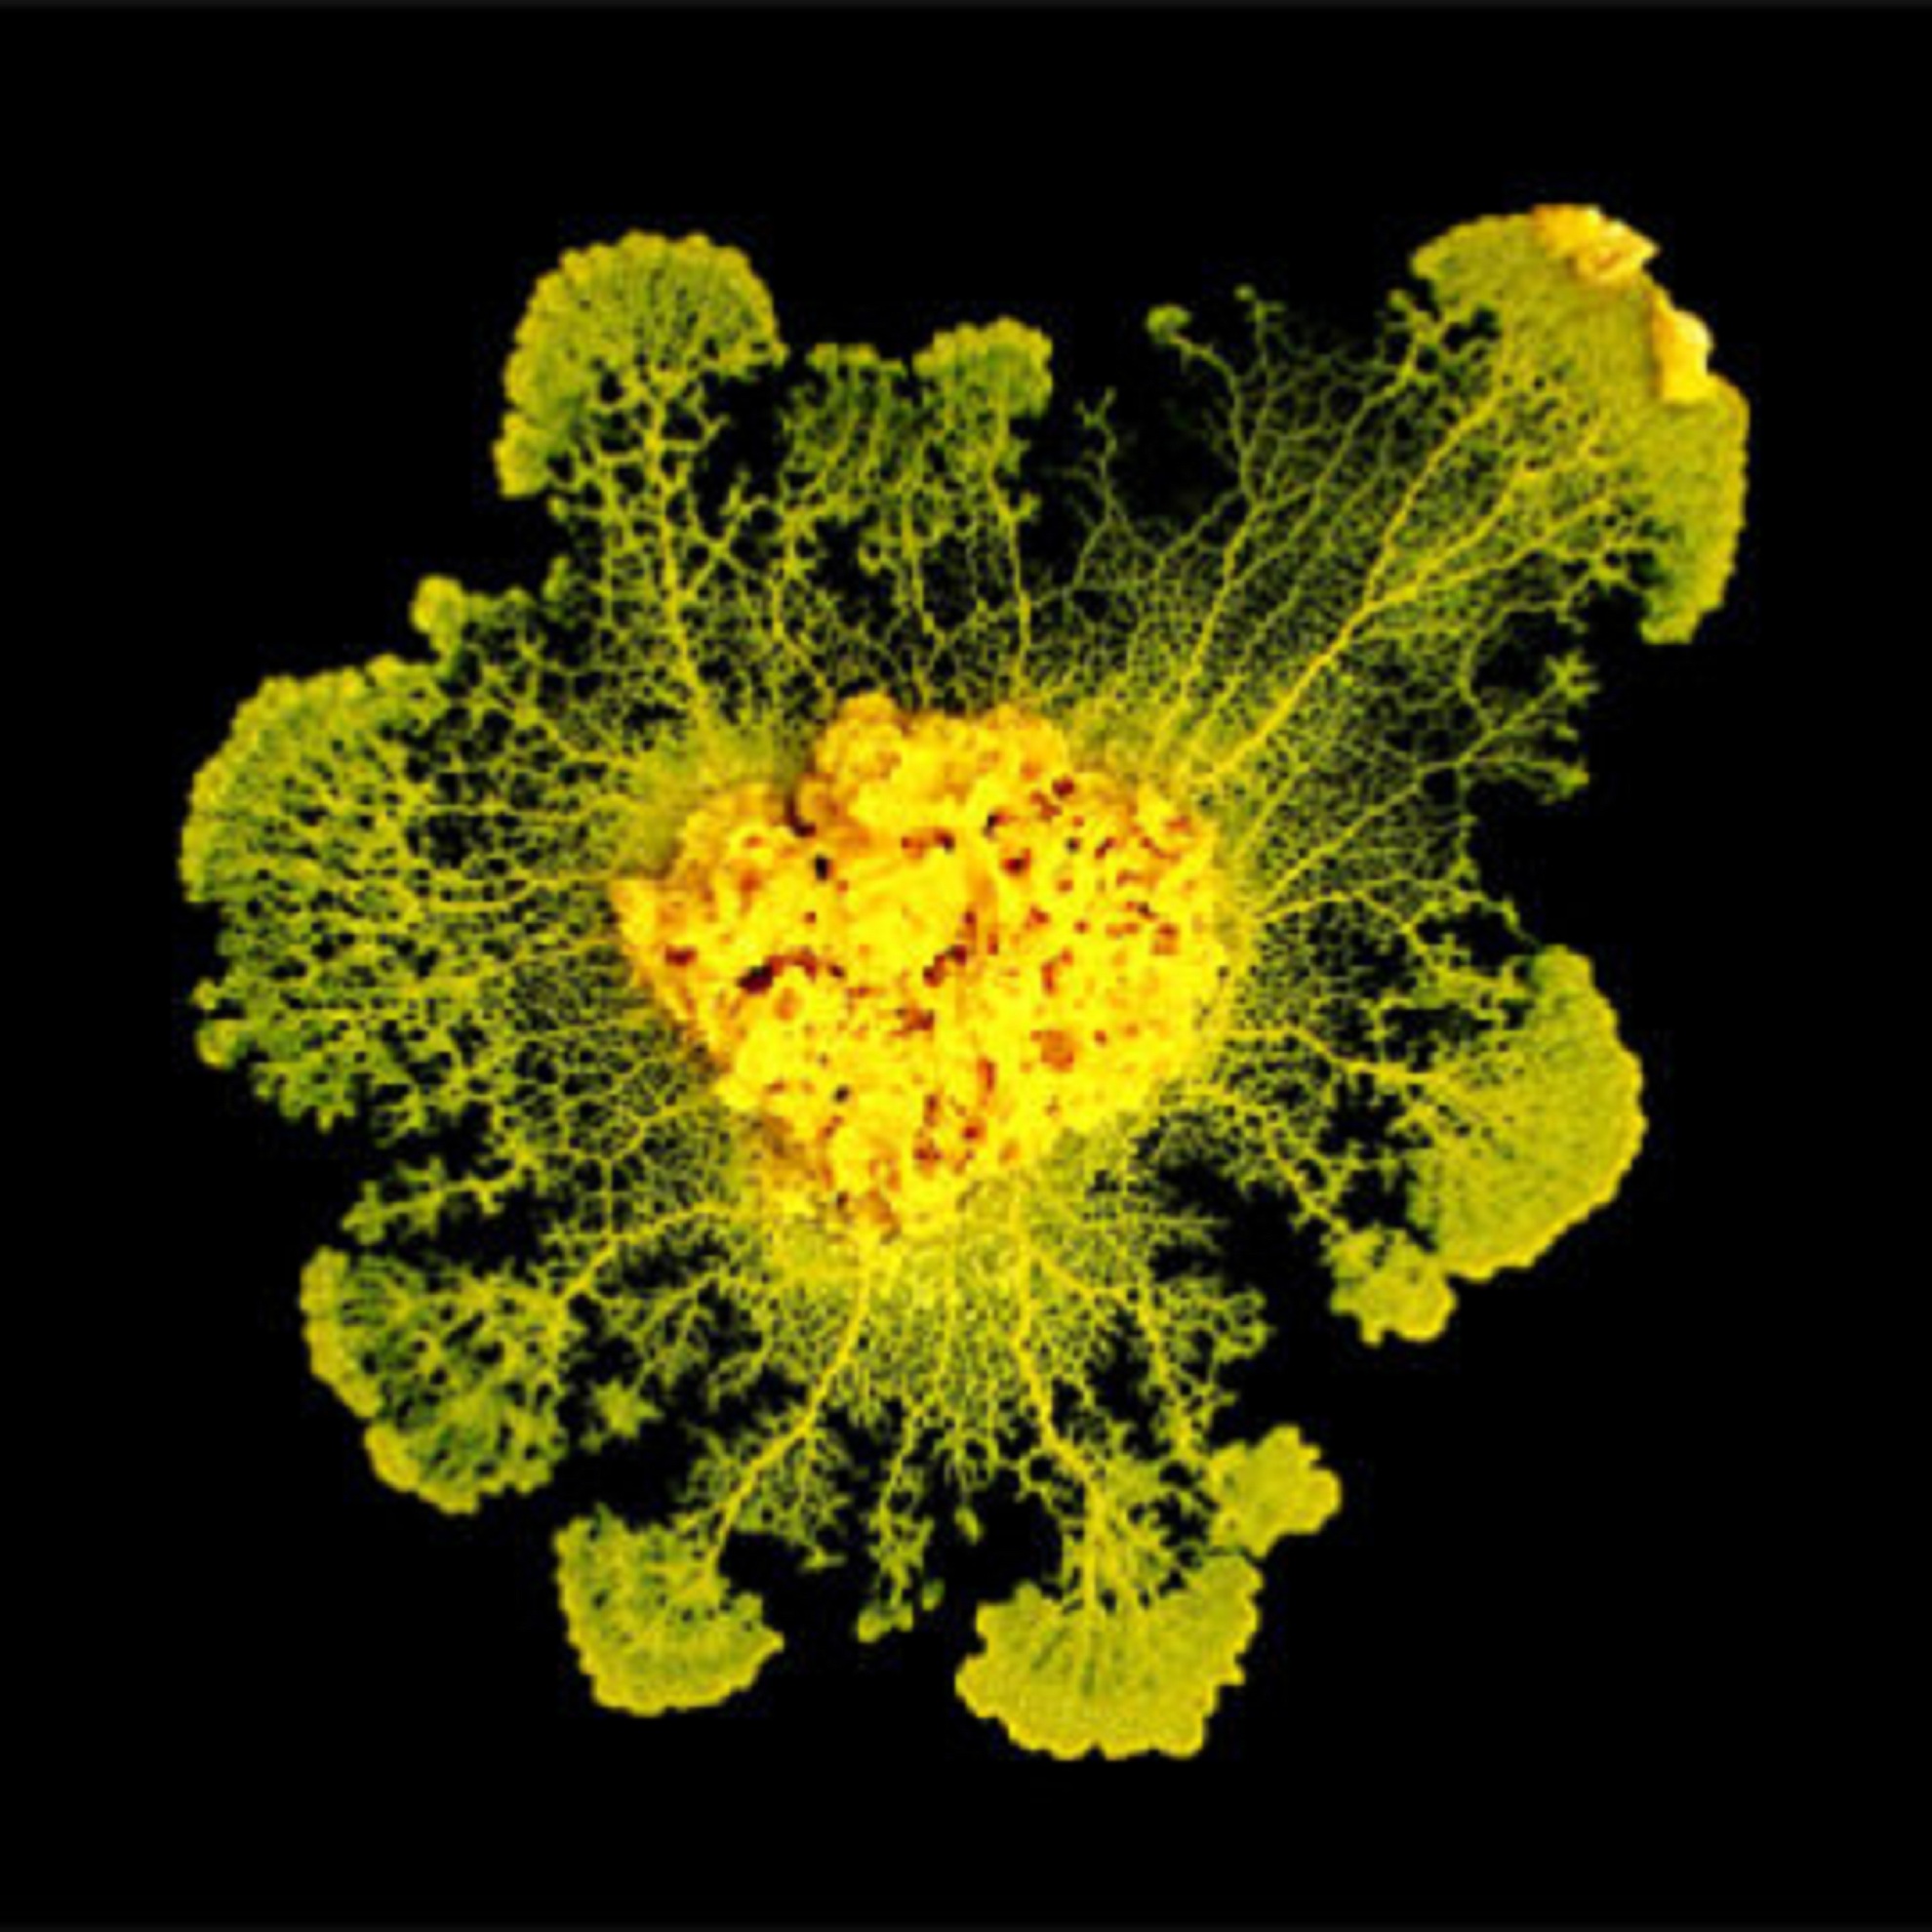 Physarum polycephalum tiene unos 10 centímetros de diámetro, una sola célula, y carece de sistema nervioso complejo. Fuente: CNRS.